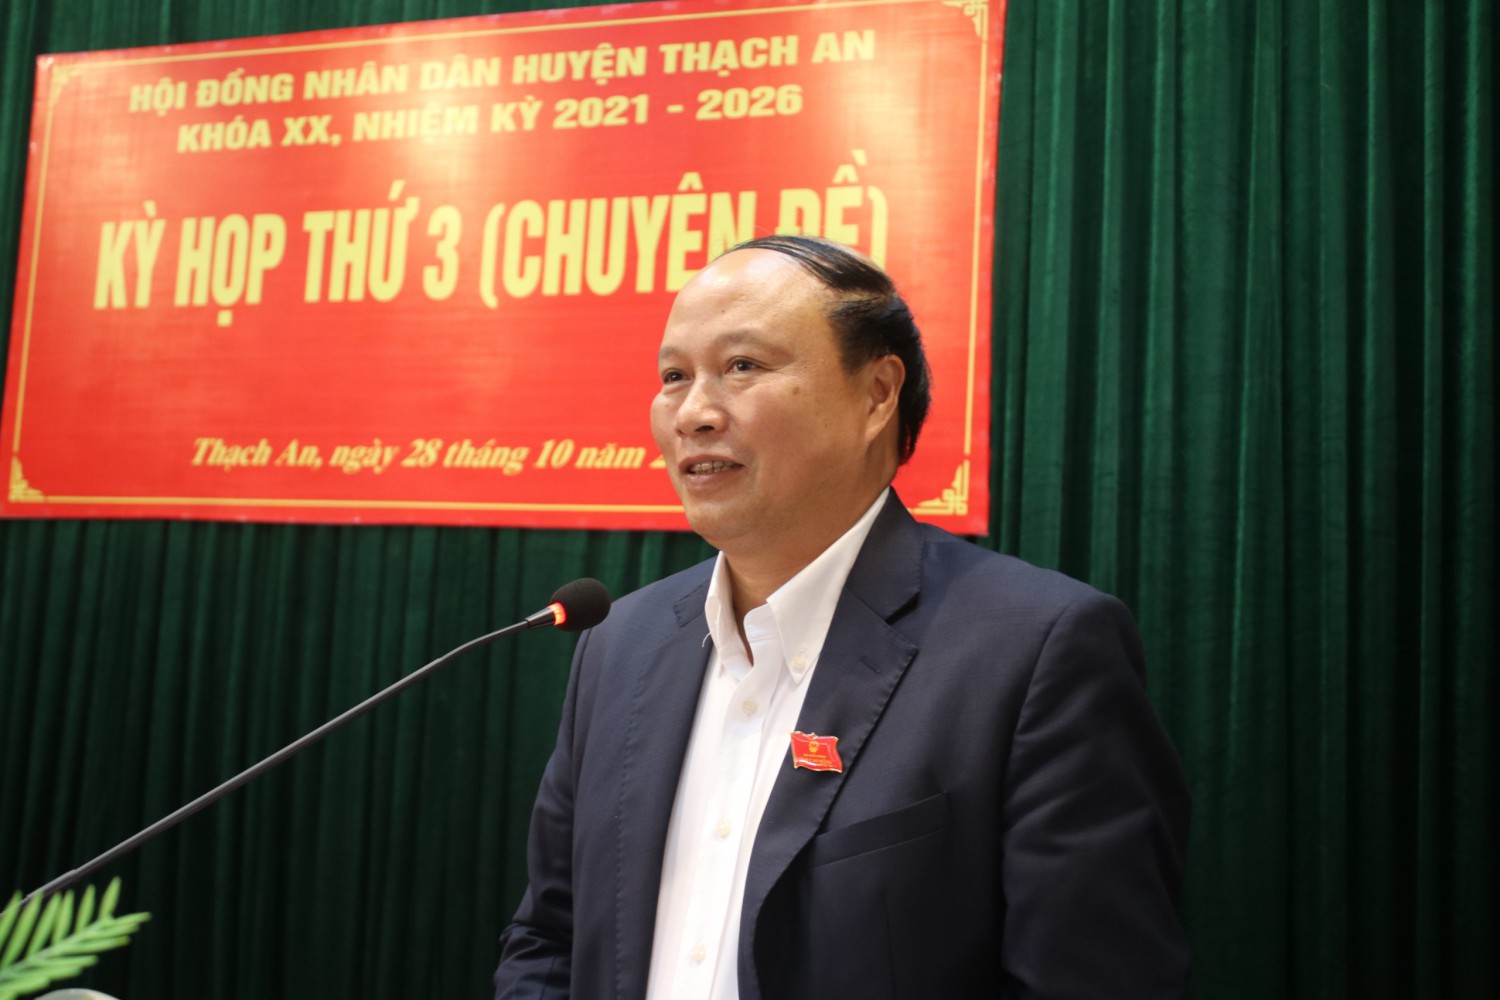 Phó Chủ tịch HĐND tỉnh Hoàng Văn Thạch phát biểu tại kỳ họp thứ 3 (chuyên đề), HĐND huyện Thạch An